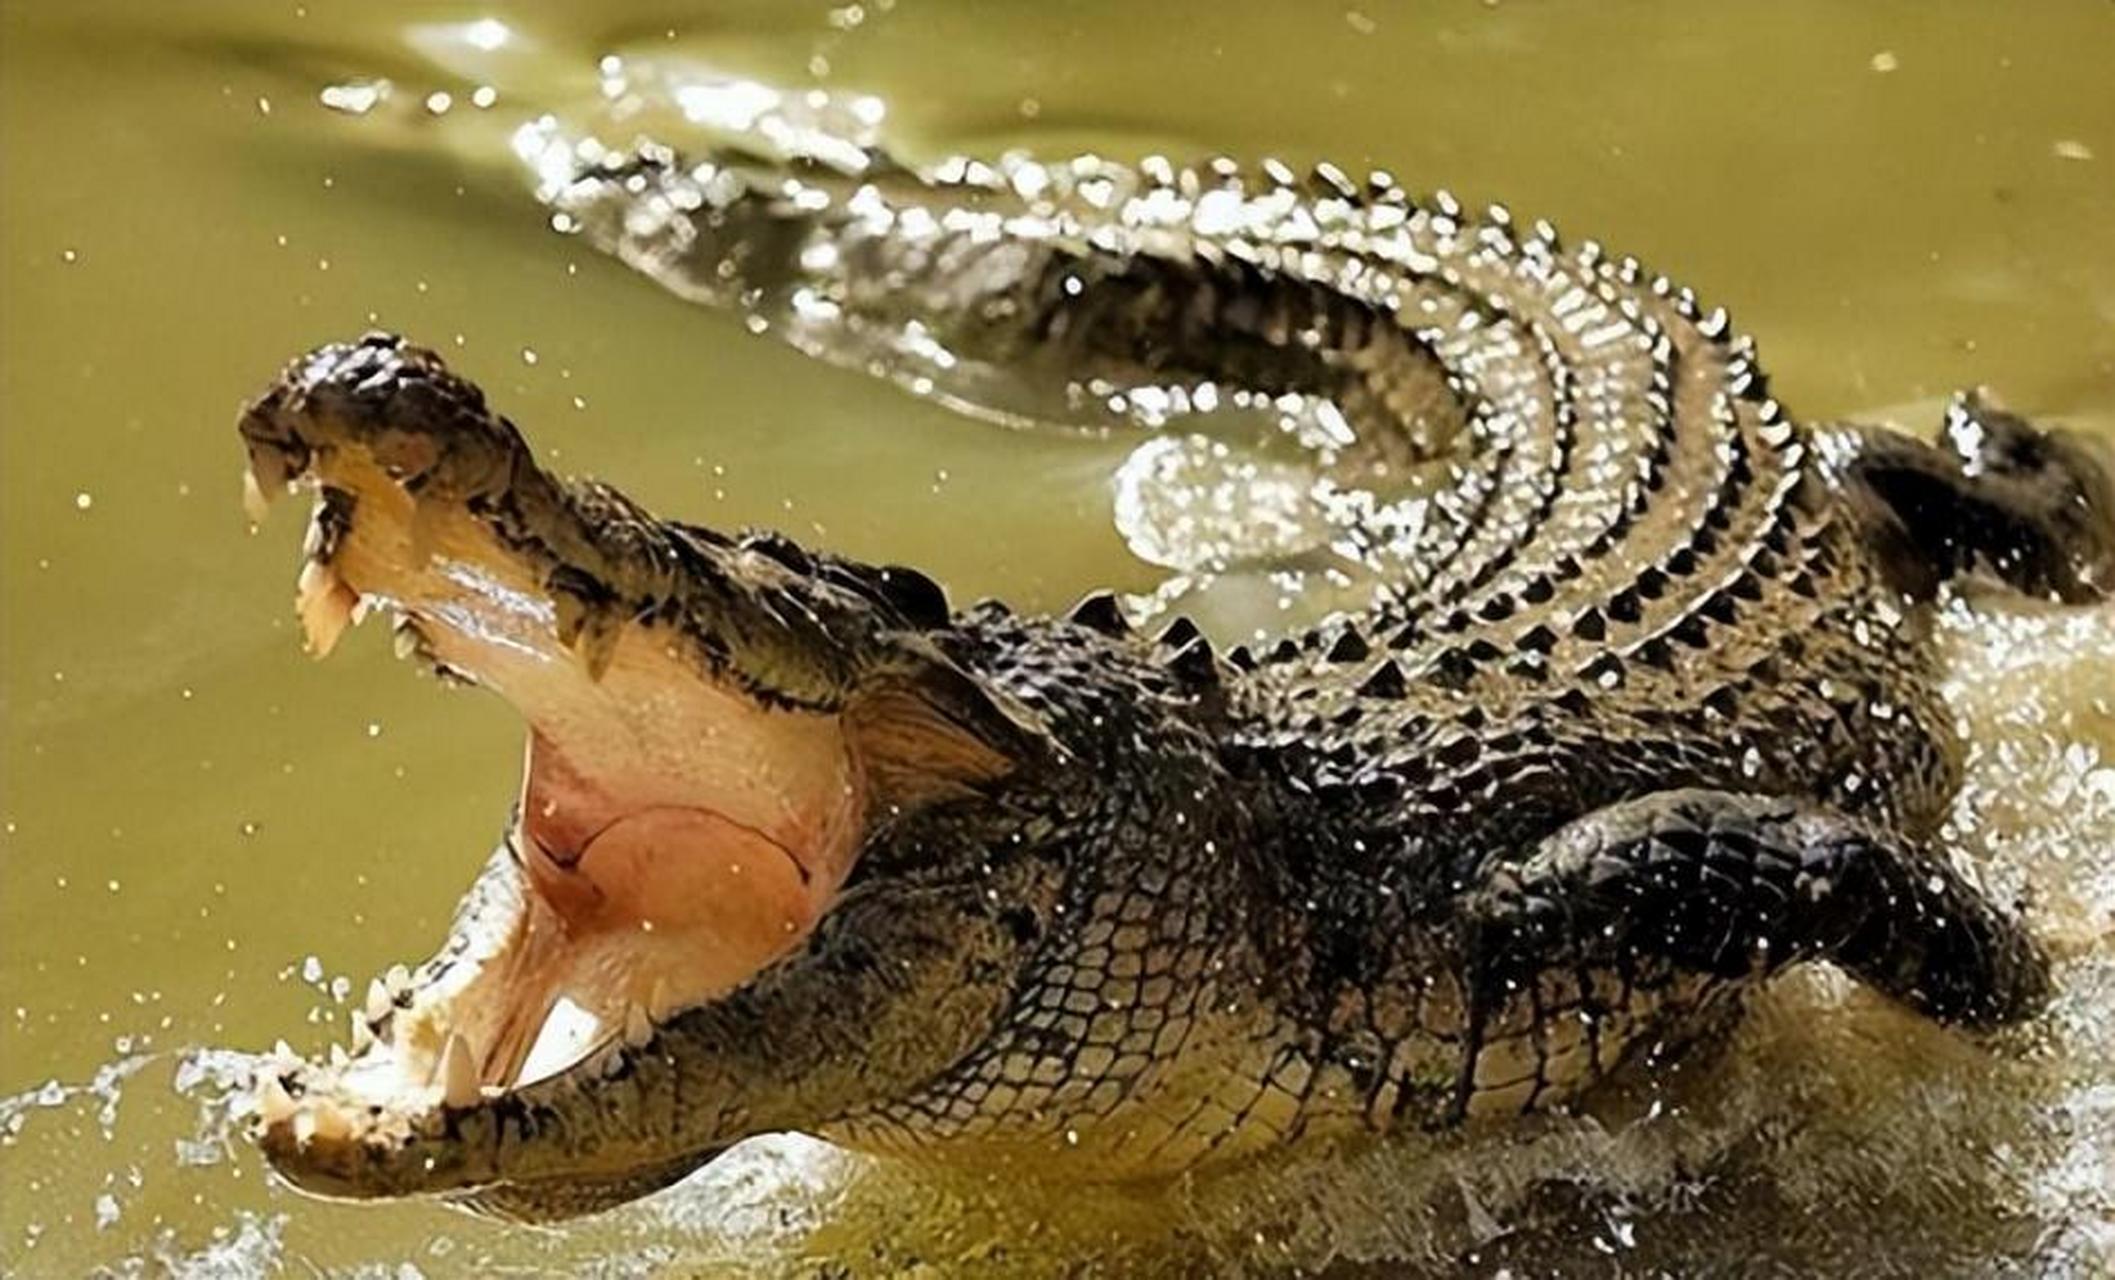 你能想象一个9岁的孩子被11只鳄鱼吞食的场景吗?